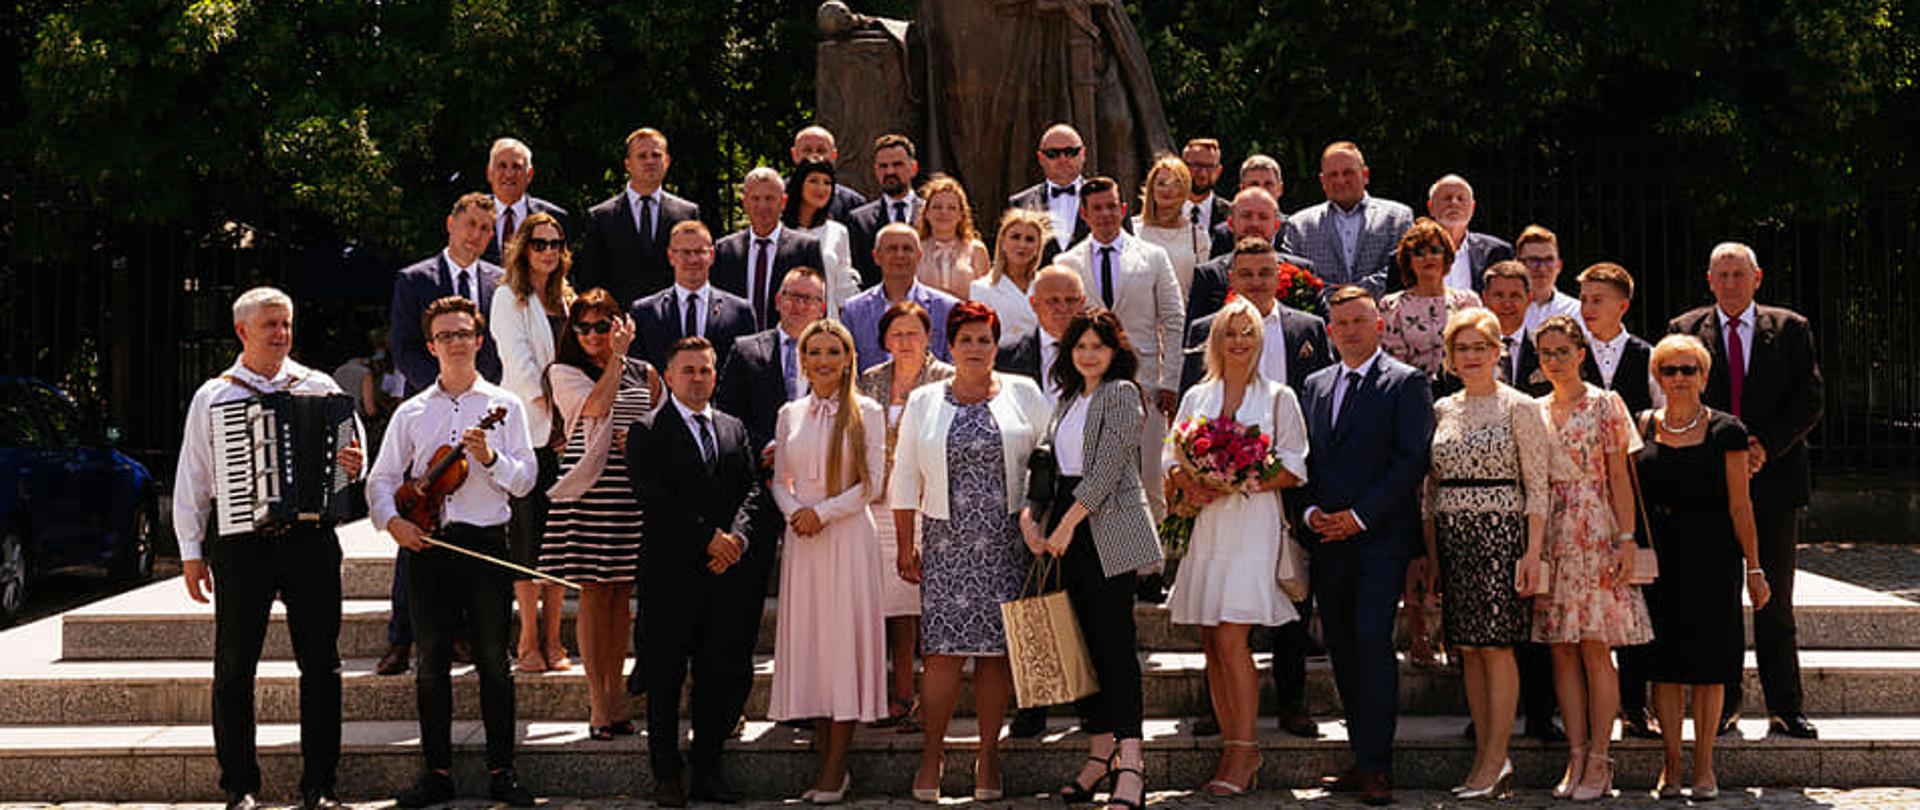 fotografia przedstawia grupowe zdjęcie właścicieli firmy INTERTECH wraz z zaproszonymi gośmi